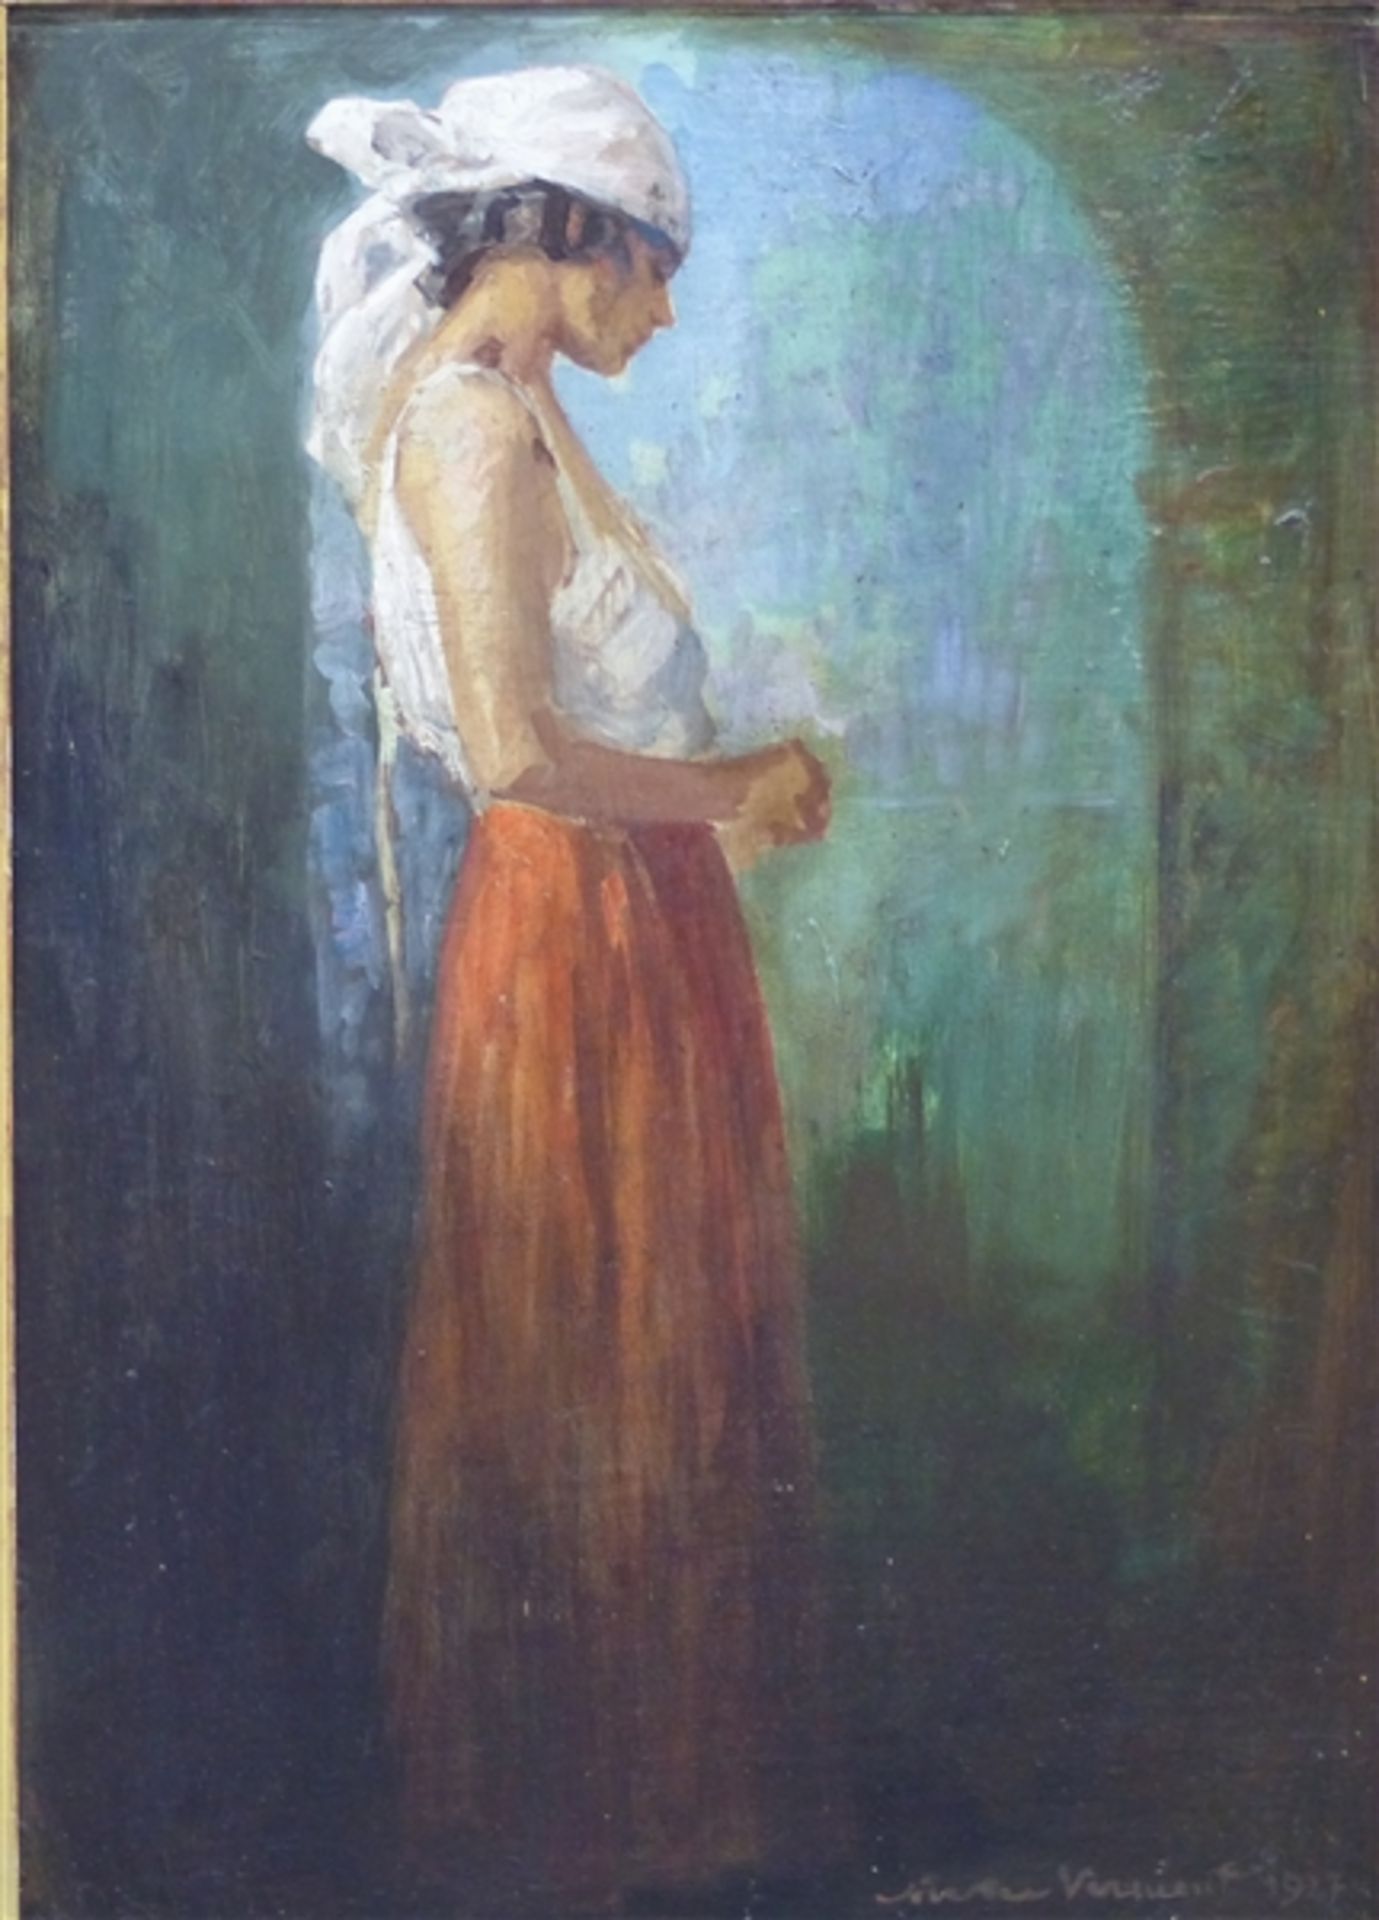 Unbekannt, 20. Jh. Öl auf Malerpappe, "Mädchen am Torbogen", unleserlich signiert, 48 x 34 cm, im